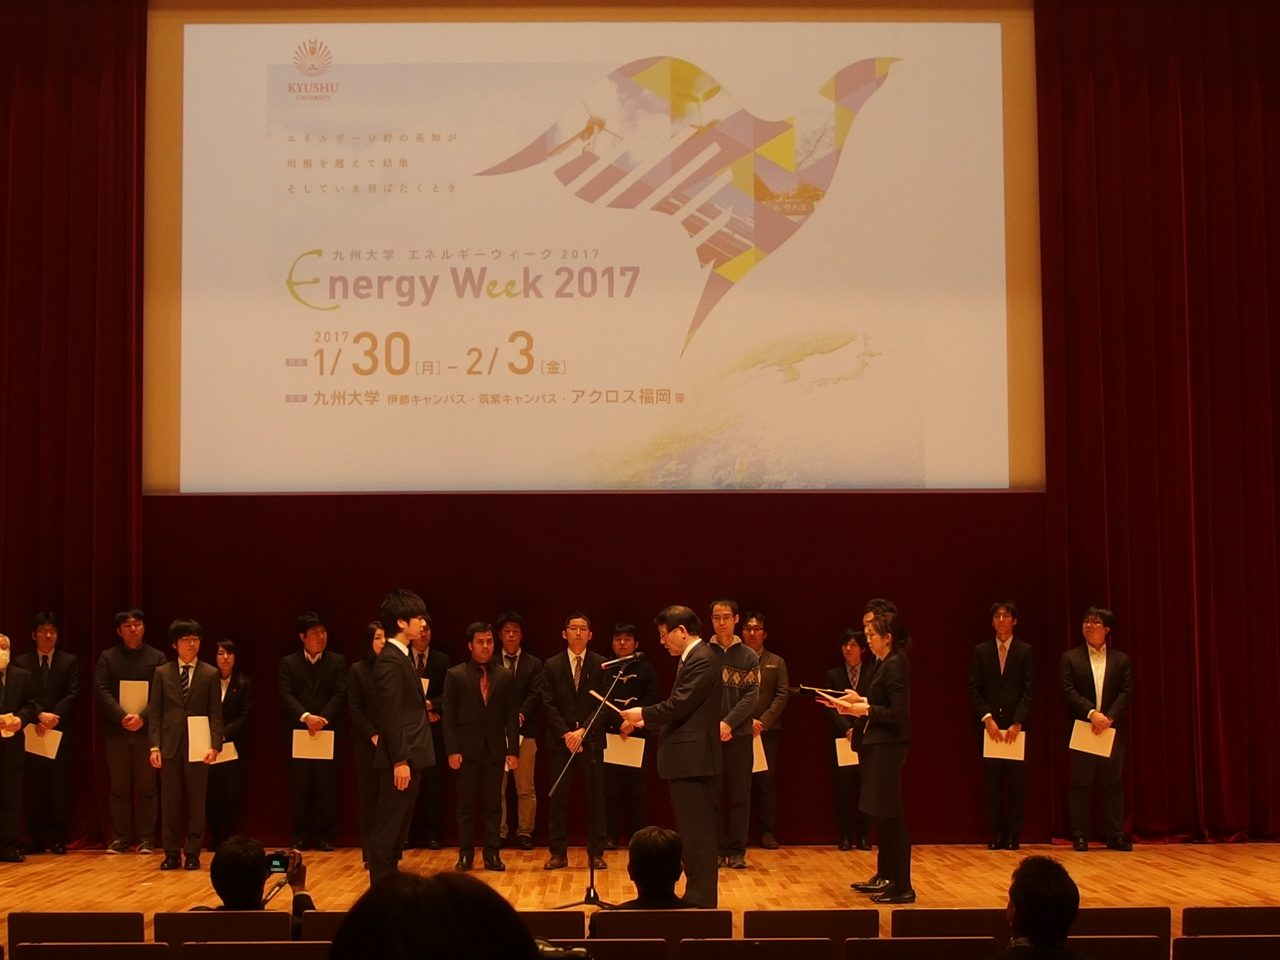 博士課程１年の高村くん(工学府水素エネルギーシステム専攻)が、九州大学エネルギーウィーク2017にて、銀賞を受賞しました。